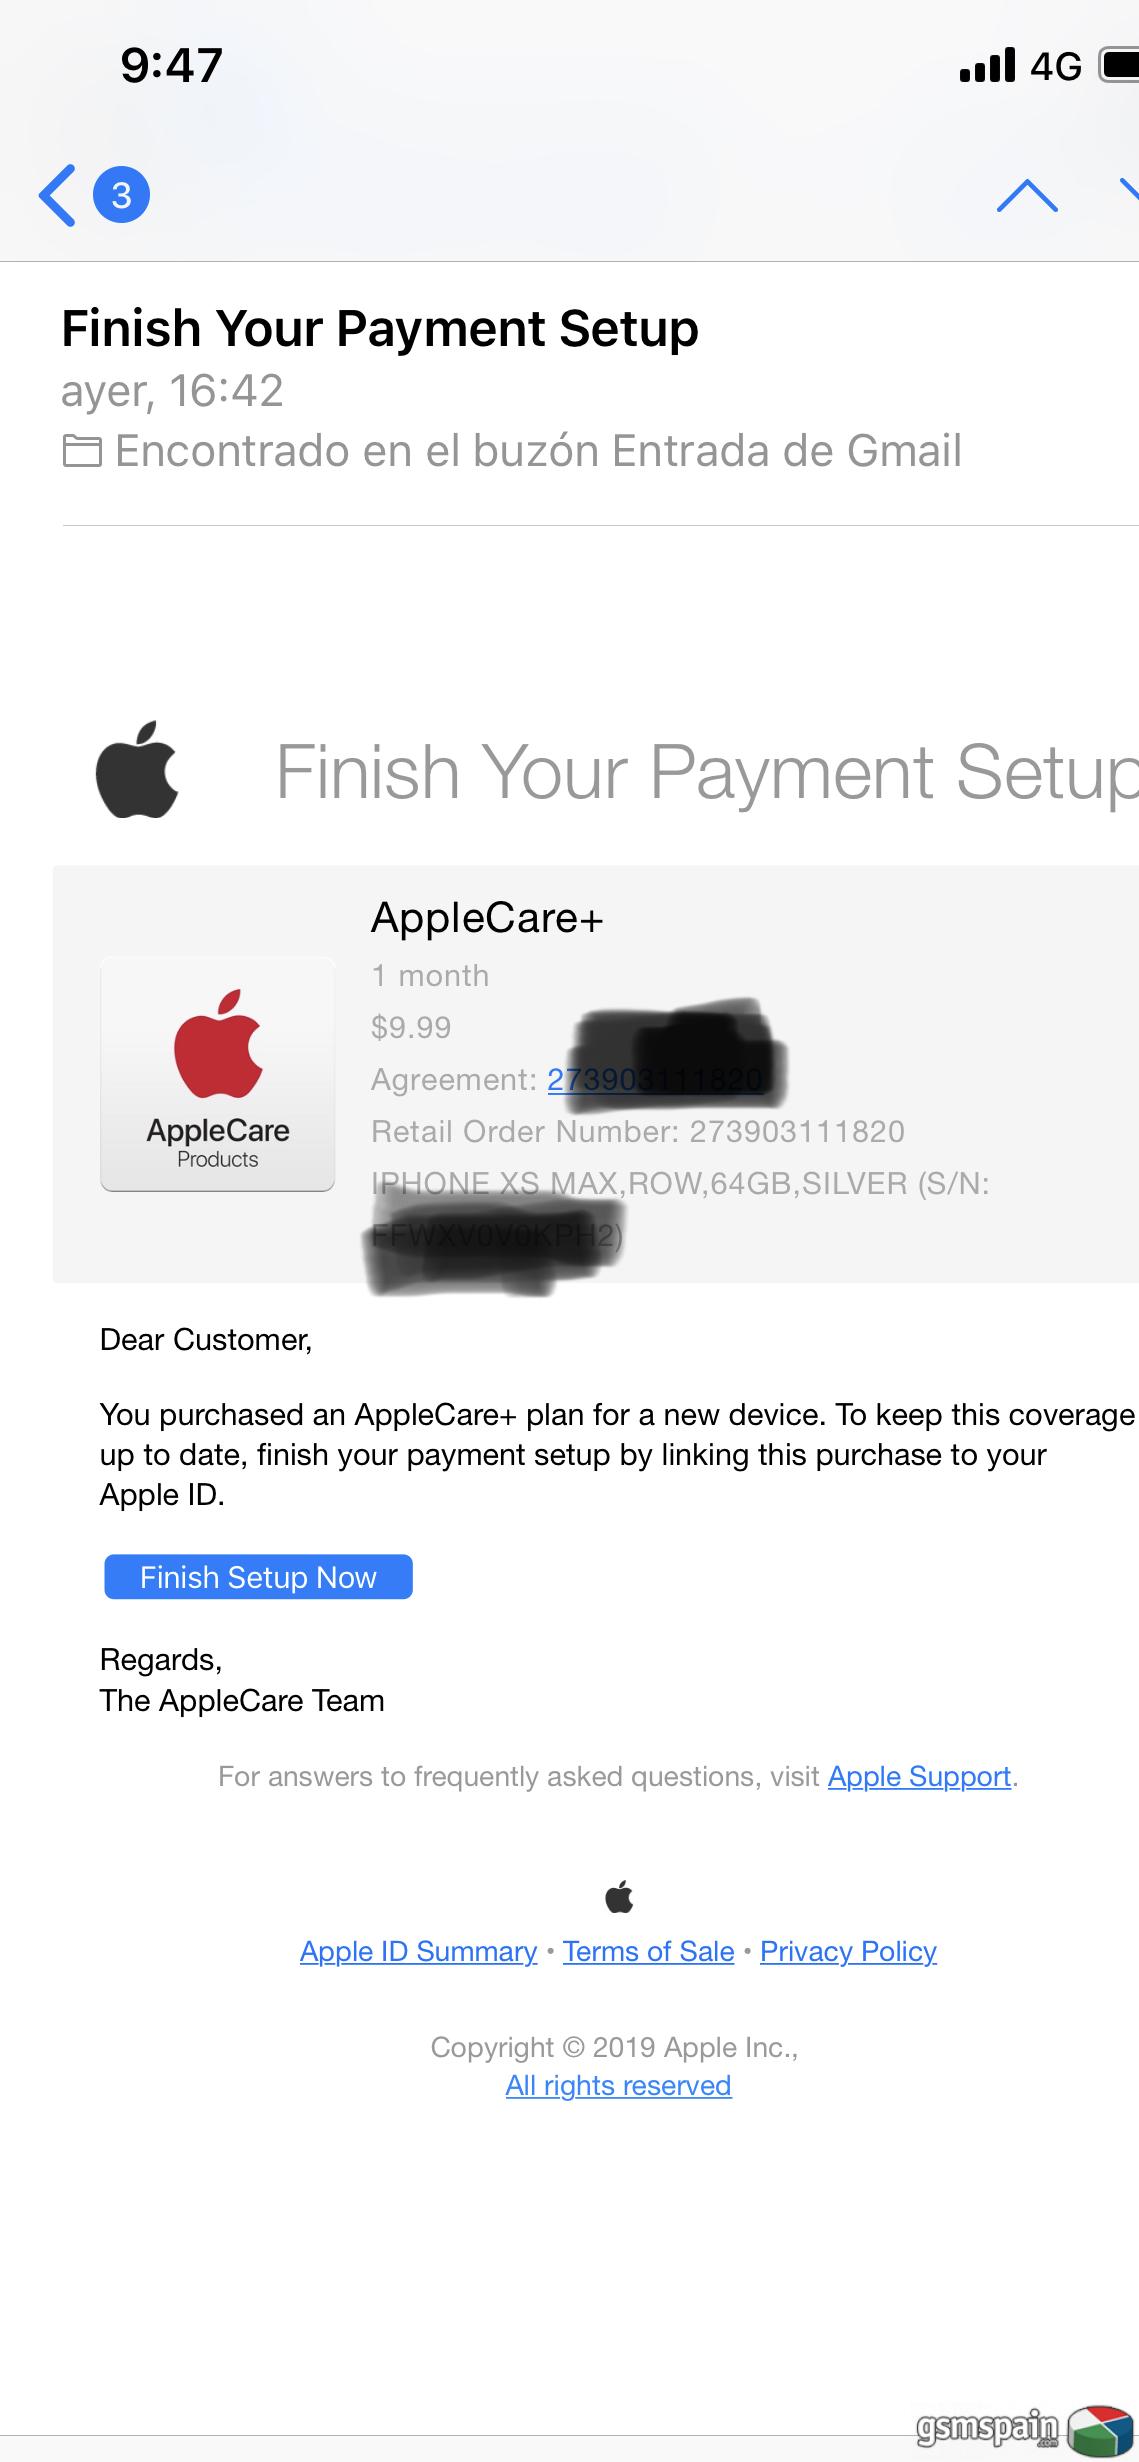 Comprar Applecare+ (No el normal) y usar en Espaa?